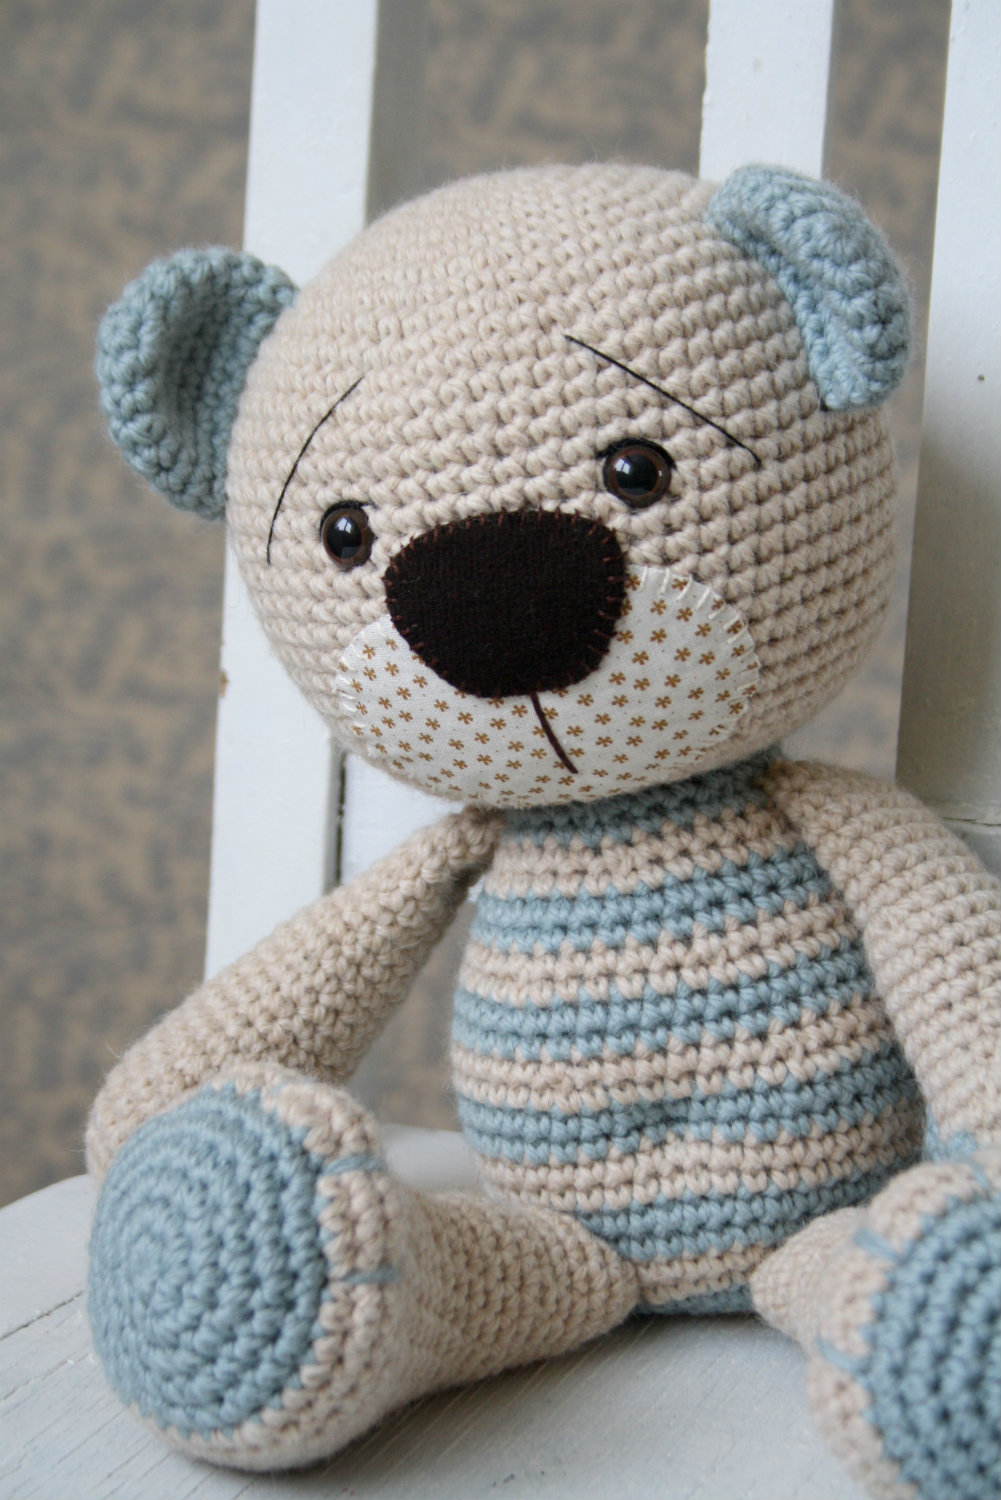 Tummy Teddy | DIY amigurumi and crochet patterns | lilleliis